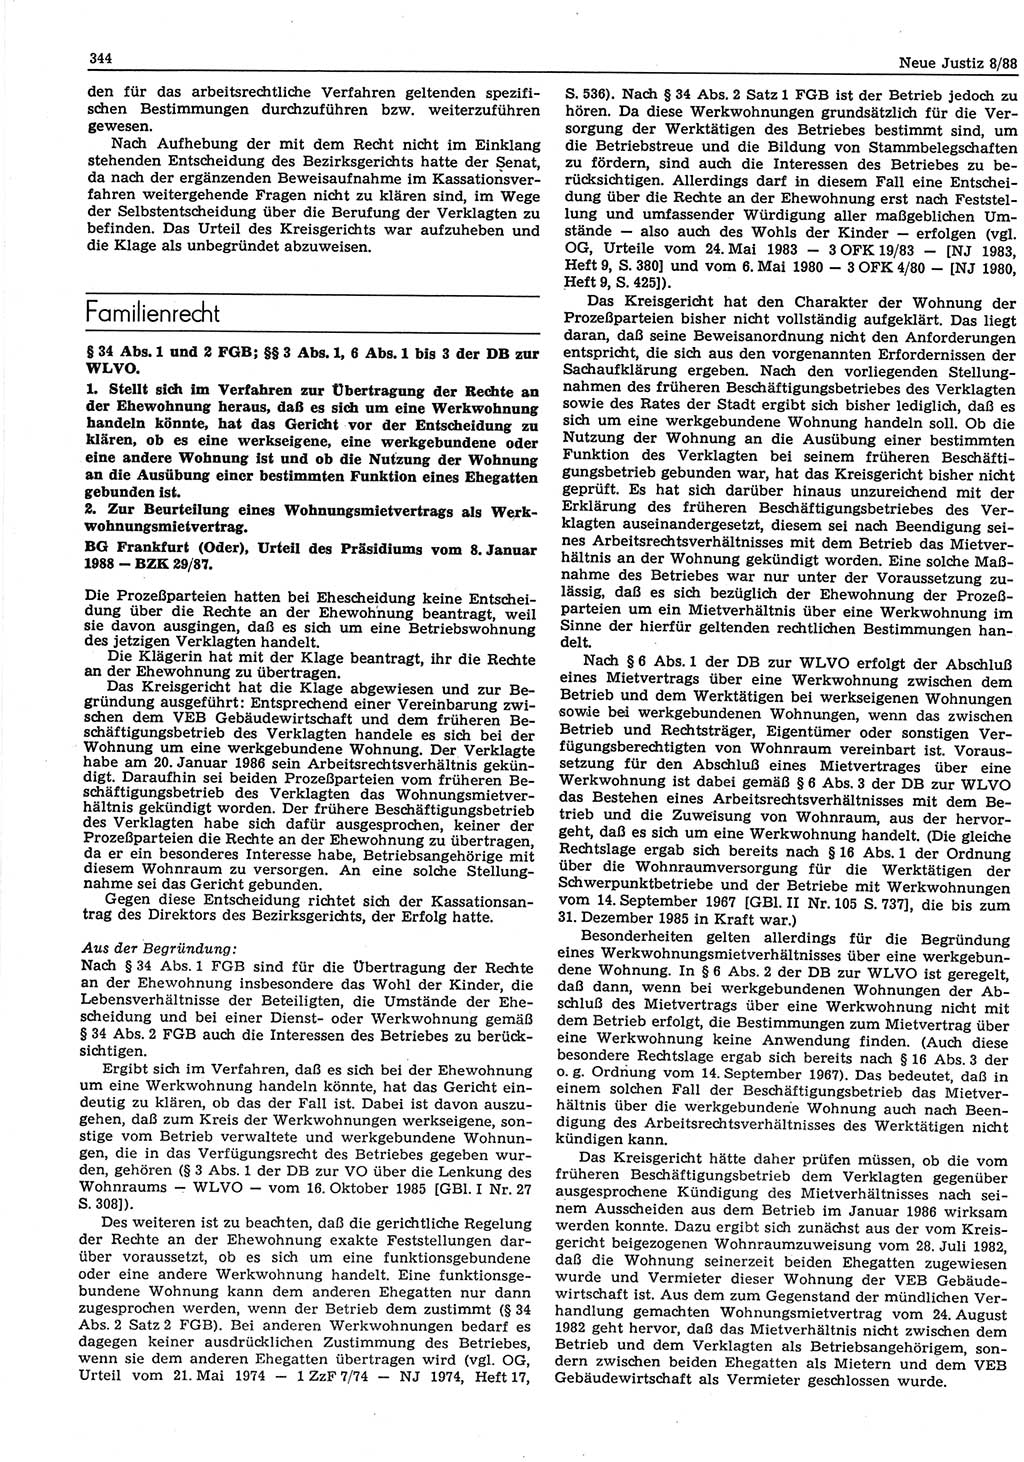 Neue Justiz (NJ), Zeitschrift für sozialistisches Recht und Gesetzlichkeit [Deutsche Demokratische Republik (DDR)], 42. Jahrgang 1988, Seite 344 (NJ DDR 1988, S. 344)